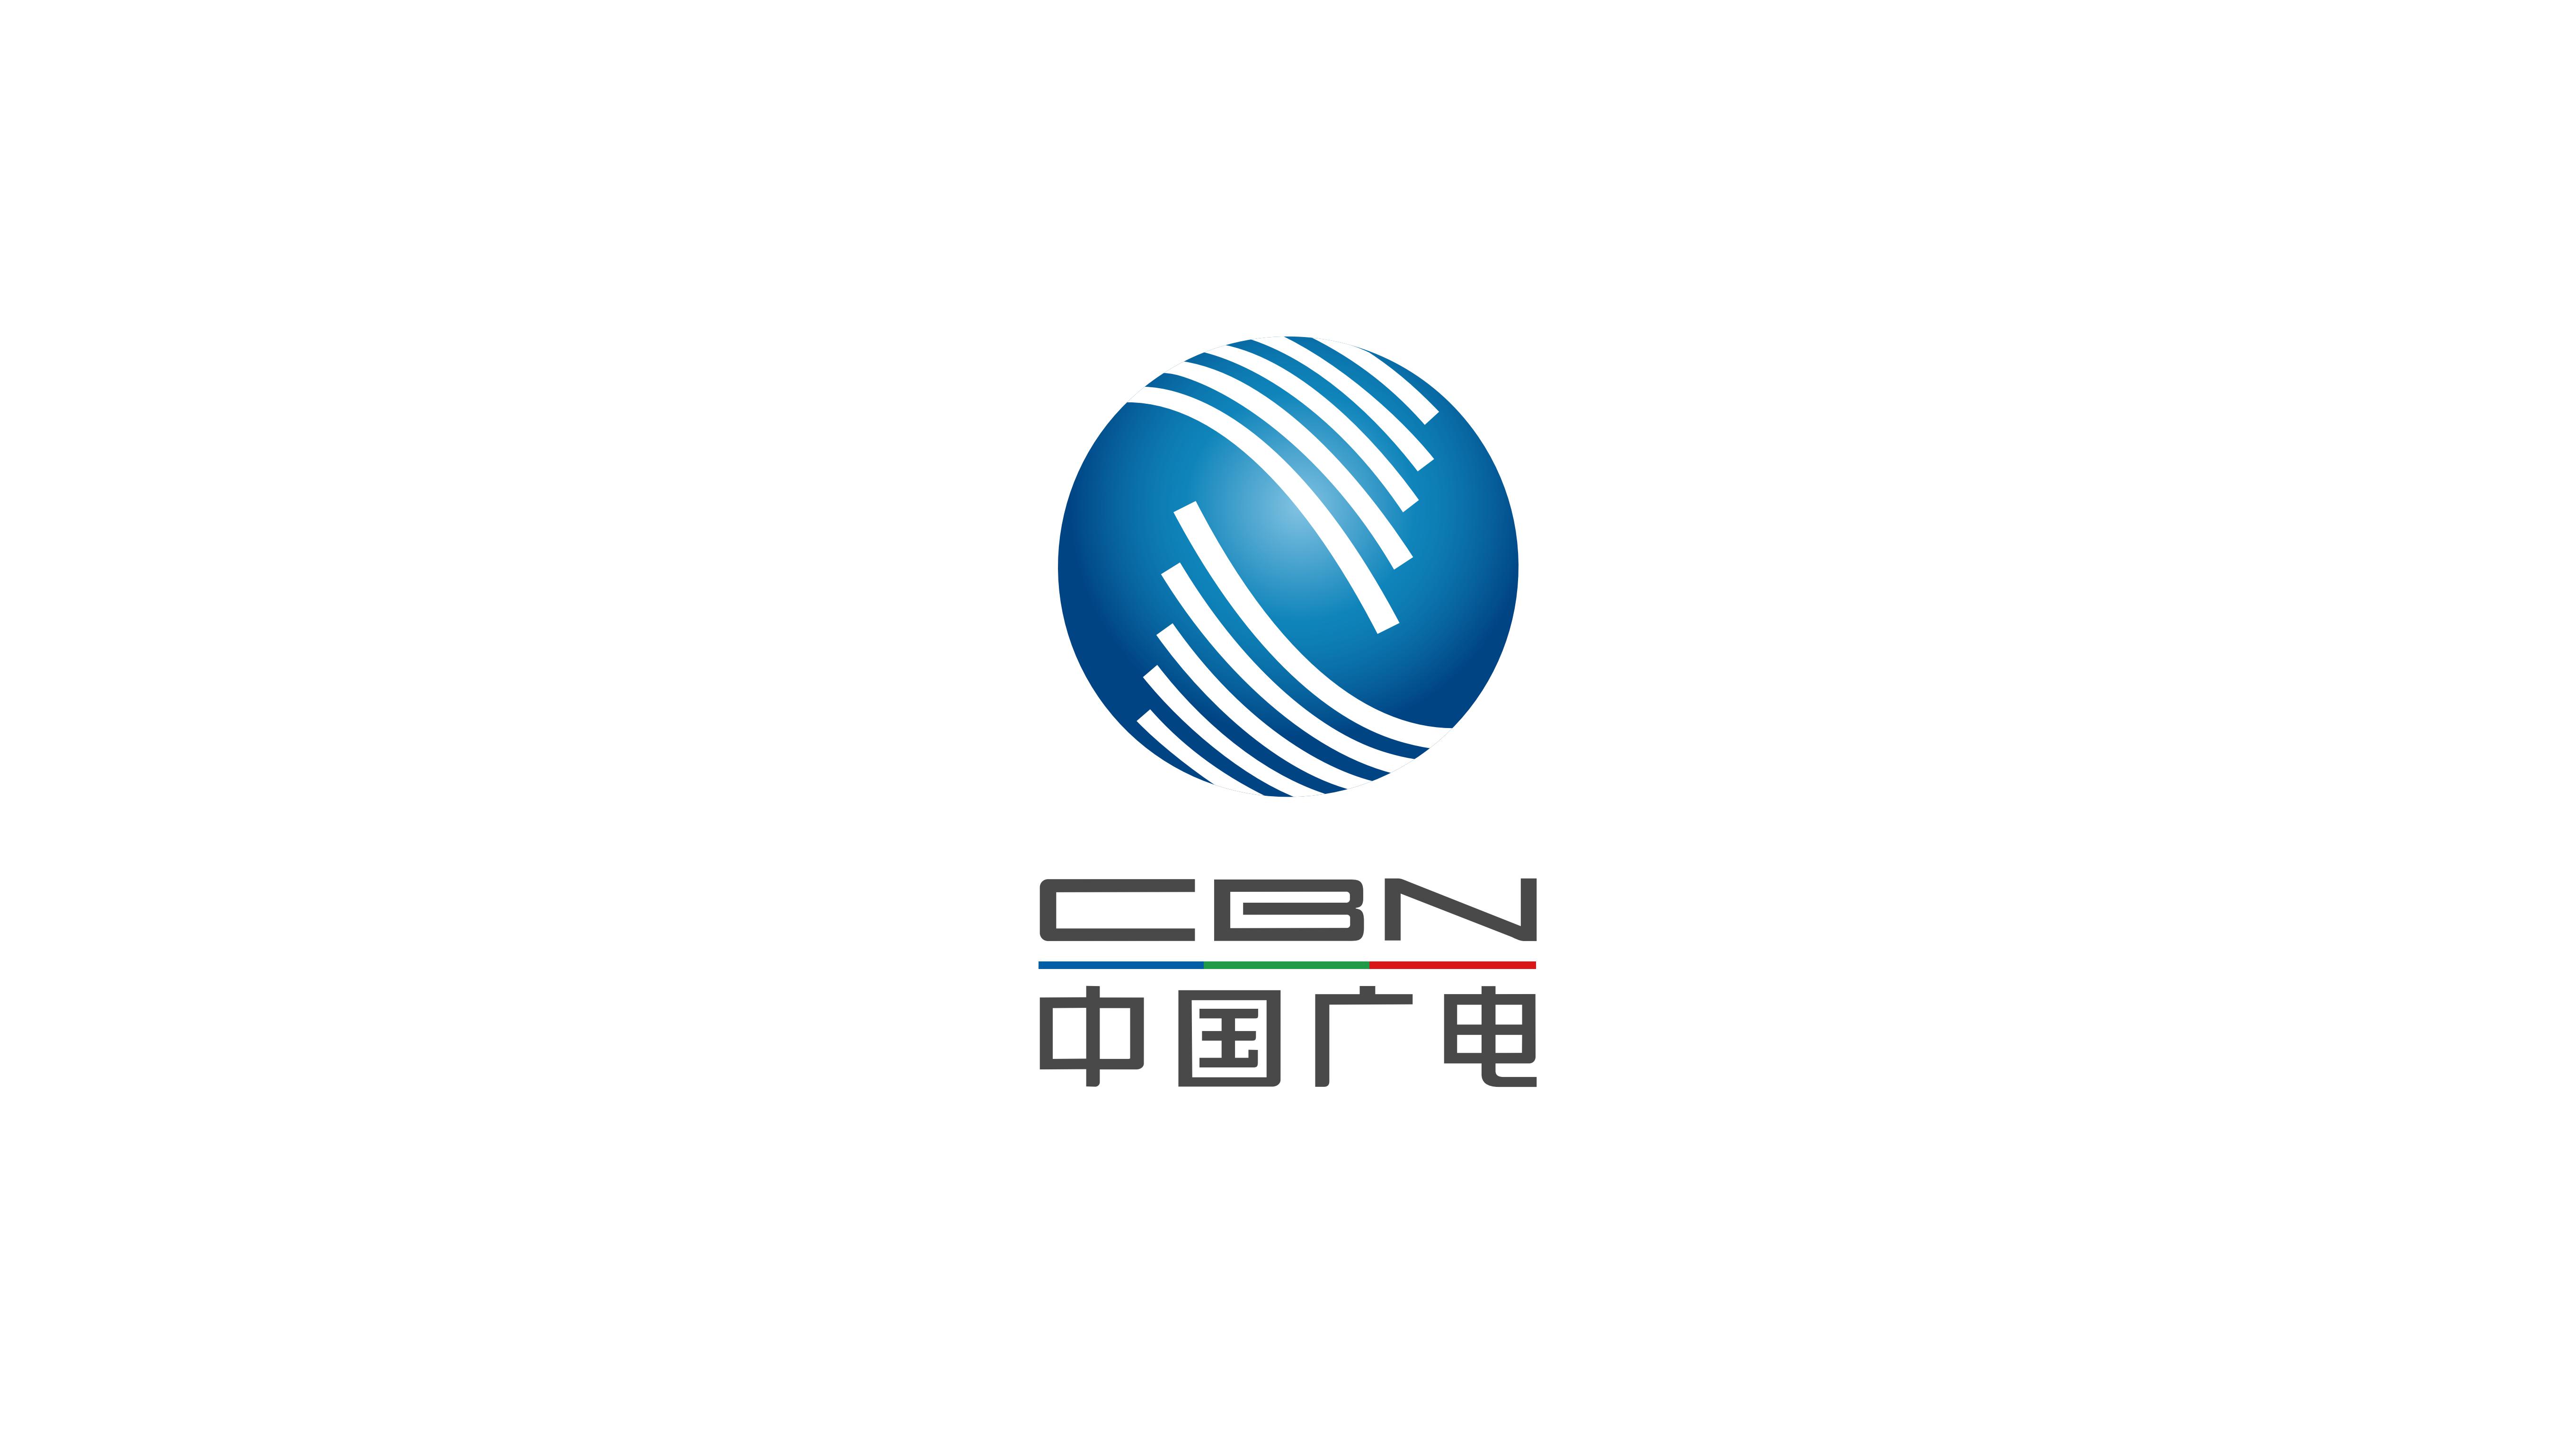 中国广电新疆网络股份有限公司前身为新疆有线电视台,1998年完成转企